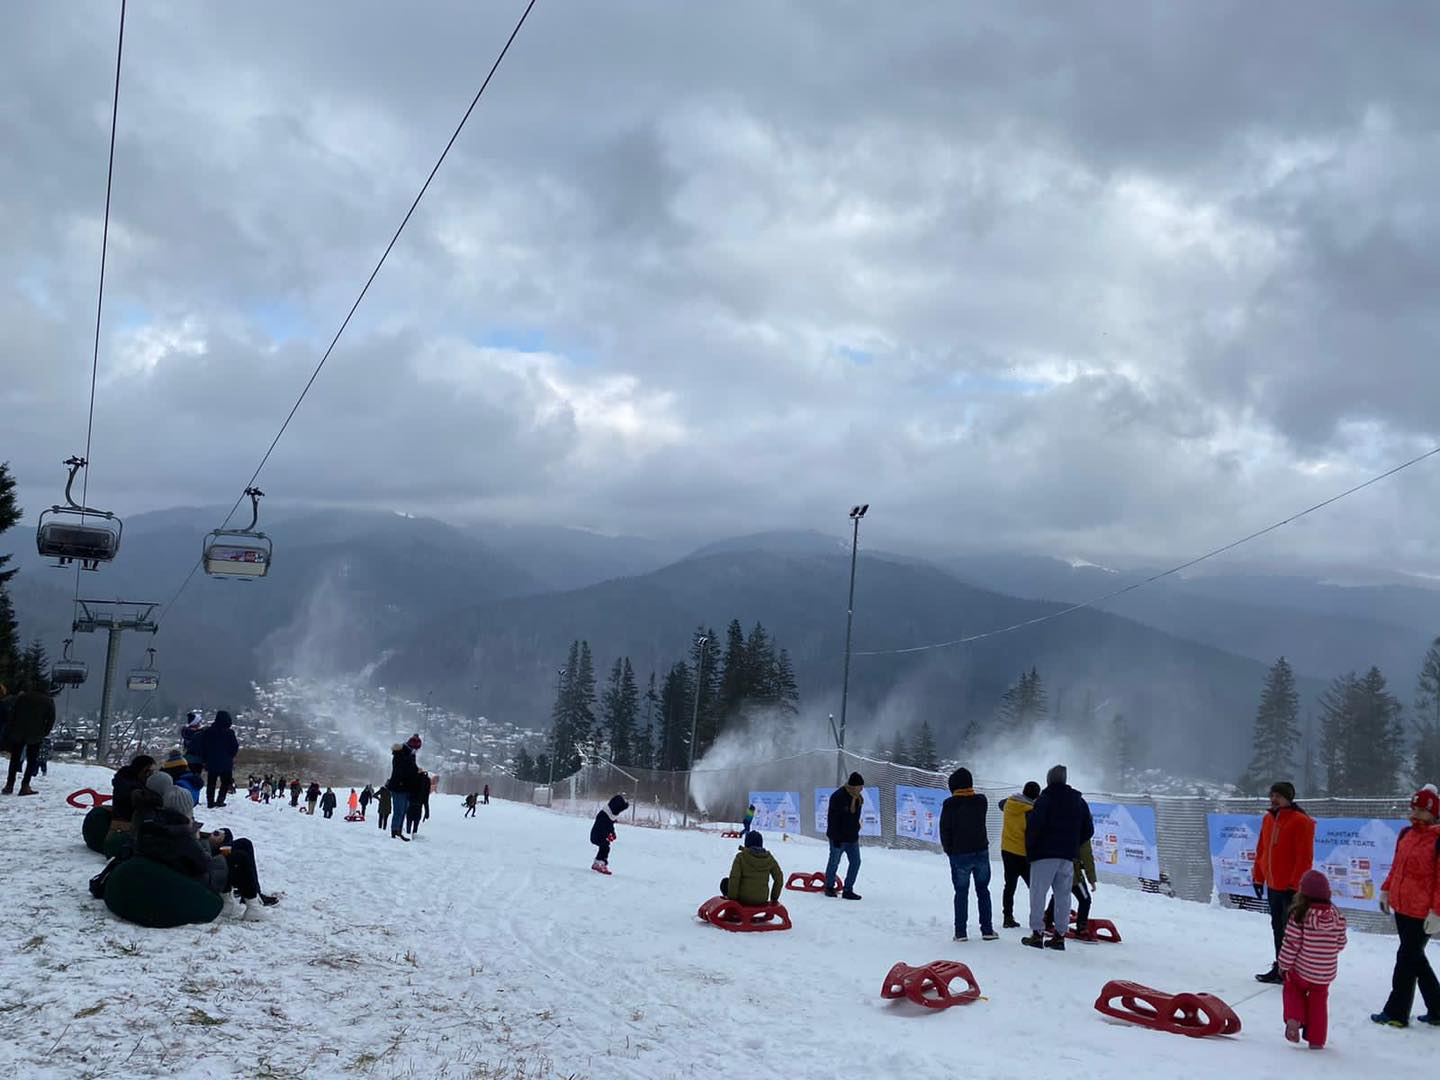 Pârtii de schi deschise în februarie. Unde mergem să schiem în funcție de gradul de dificultate